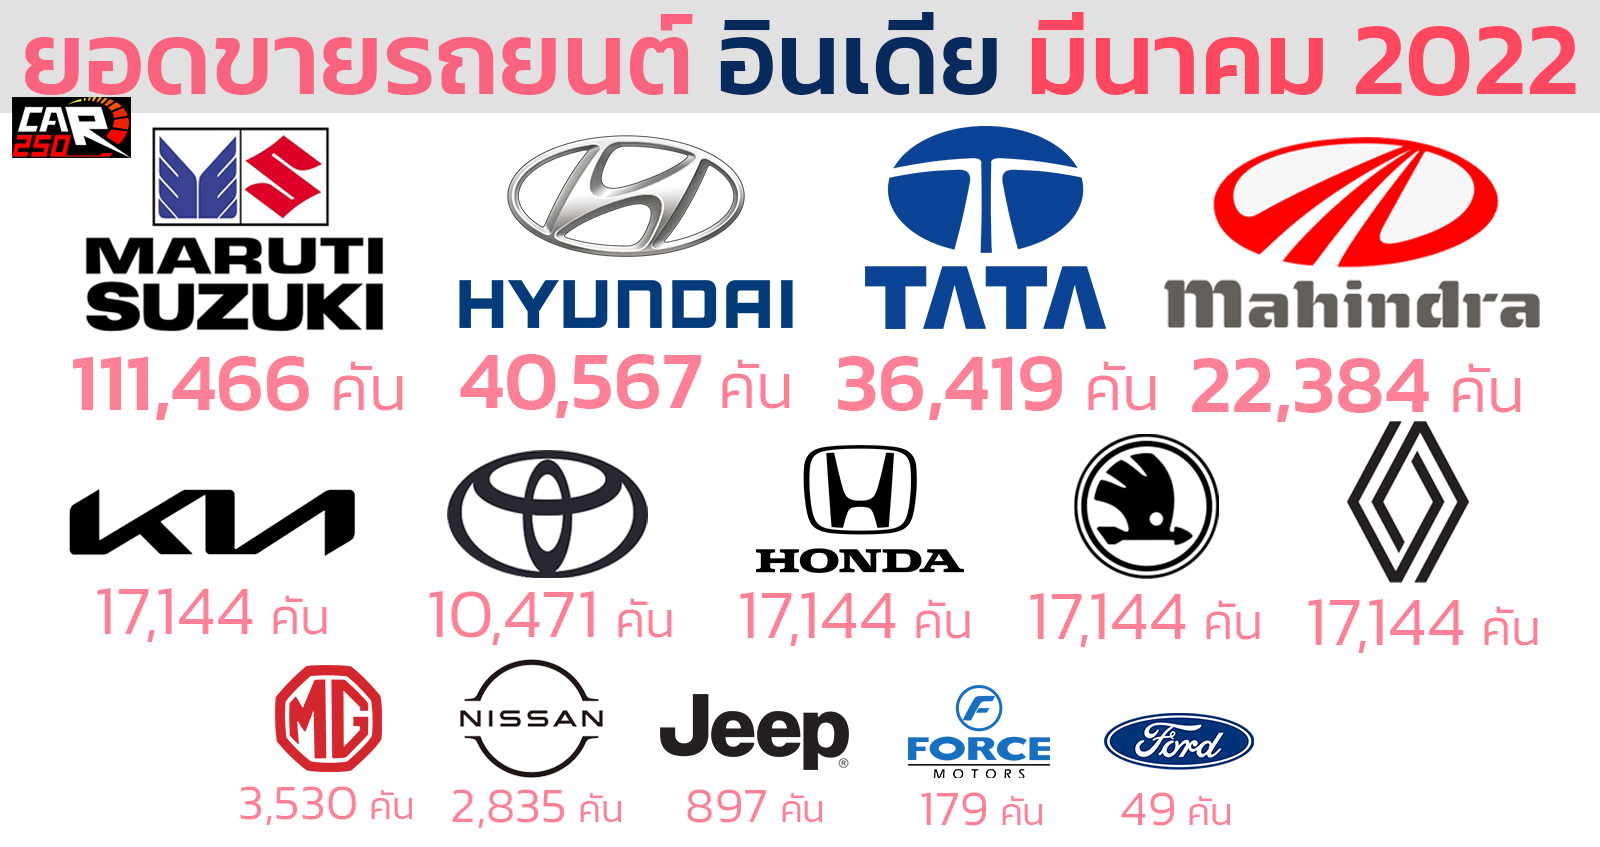 ยอดขายรถยนต์ อินเดีย มีนาคม 2022 รวม 271,358 คัน เจ้าตลาดยังคงเป็นของ MARUTI